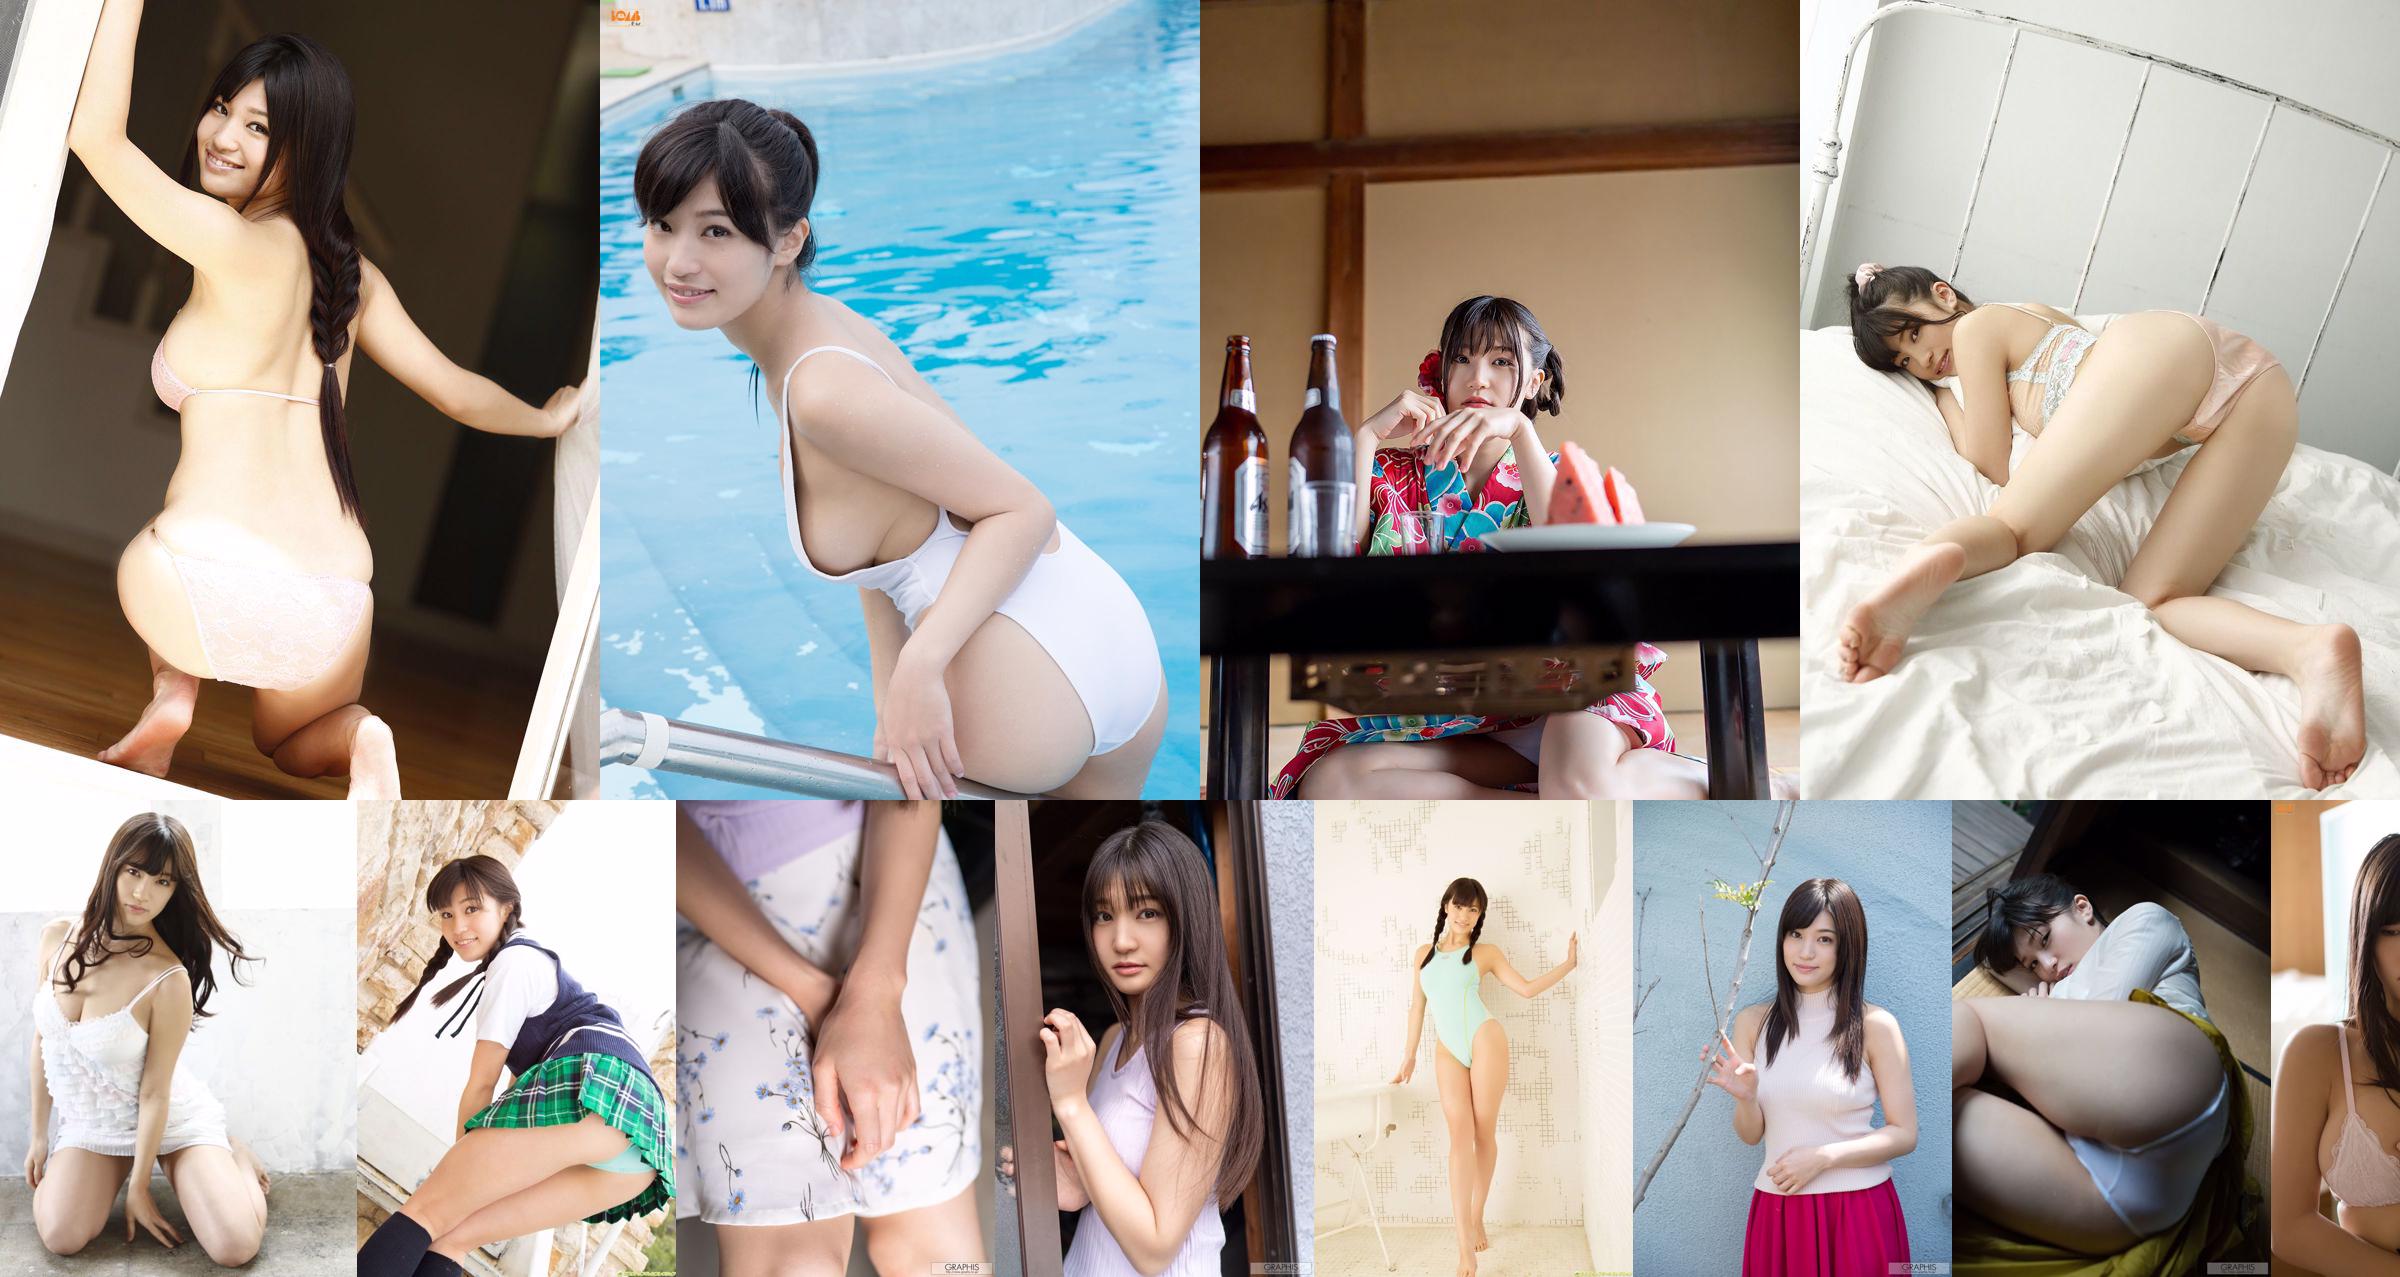 [Bomb.TV] Numero di maggio 2015 Seiko Takasaki Seiko Takasaki / Takahashi Seiko No.5a4911 Pagina 1